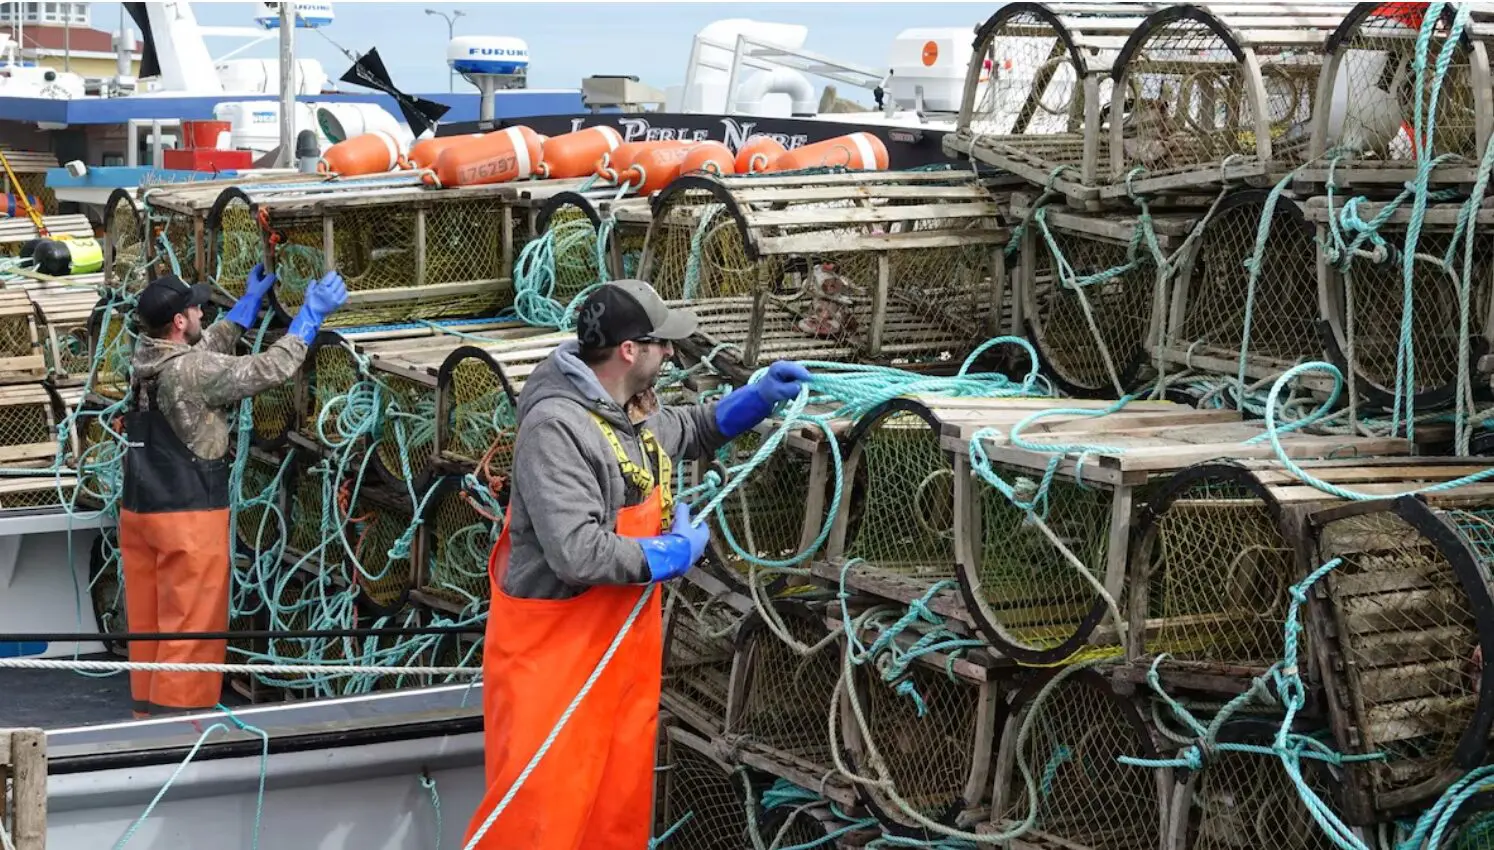 Vent d’optimisme à la veille du début de la pêche au homard aux Îles de la Madeleine